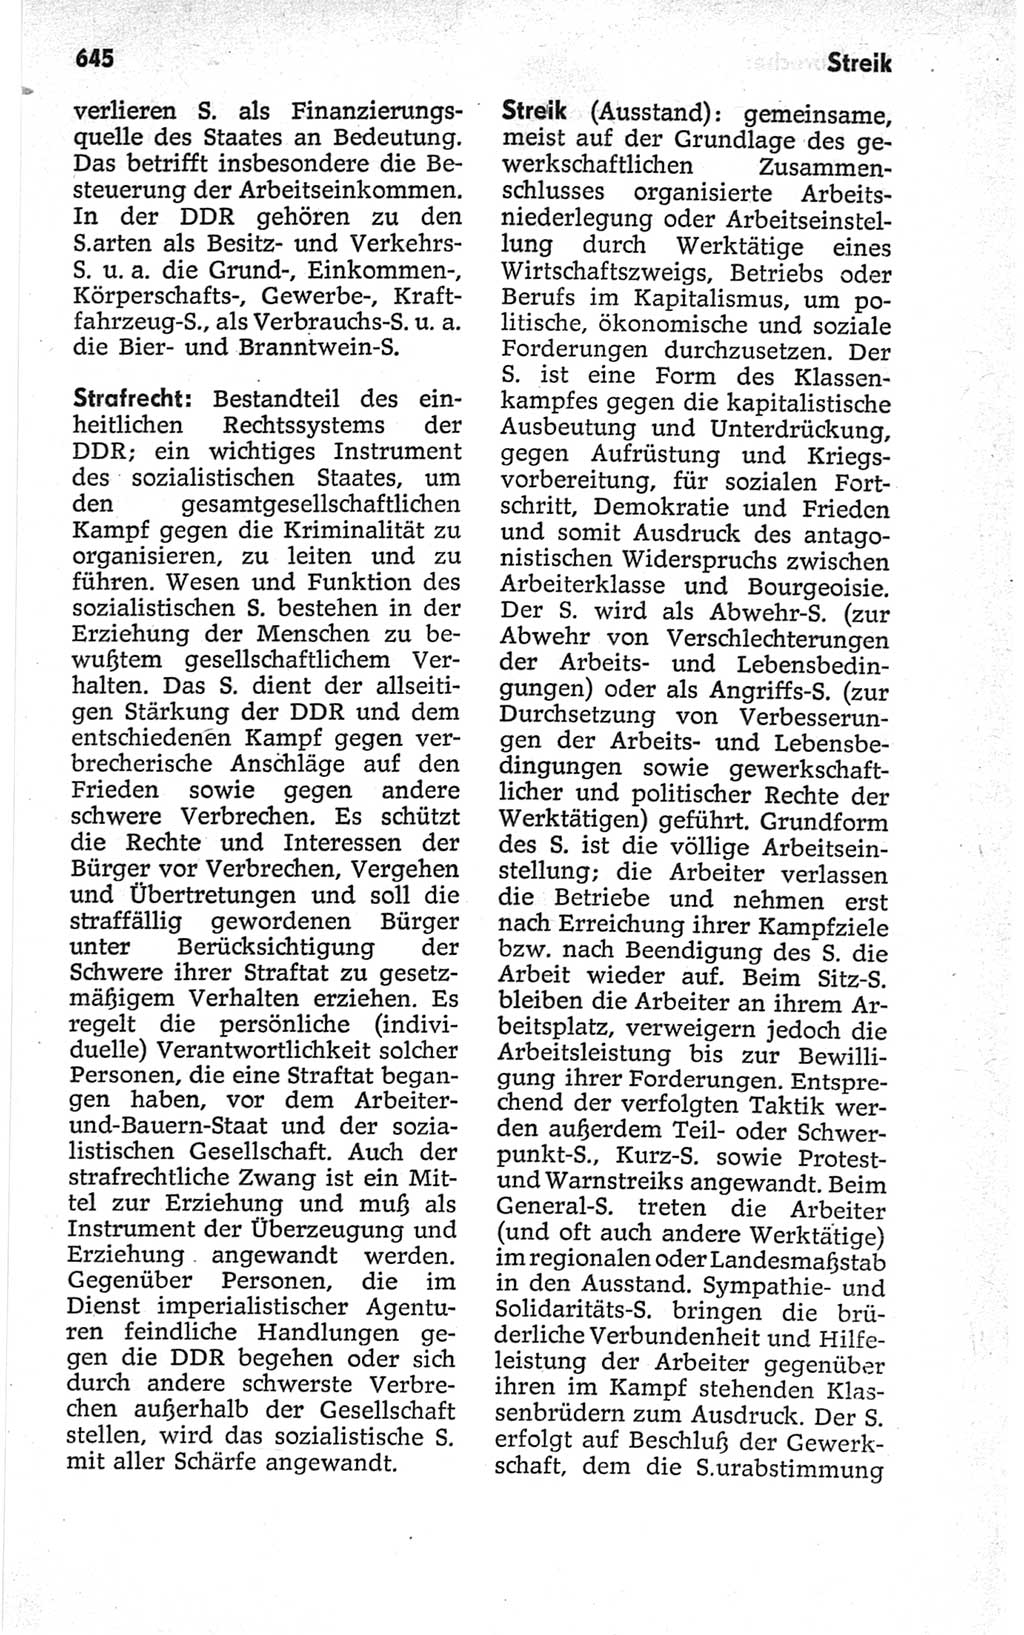 Kleines politisches Wörterbuch [Deutsche Demokratische Republik (DDR)] 1967, Seite 645 (Kl. pol. Wb. DDR 1967, S. 645)